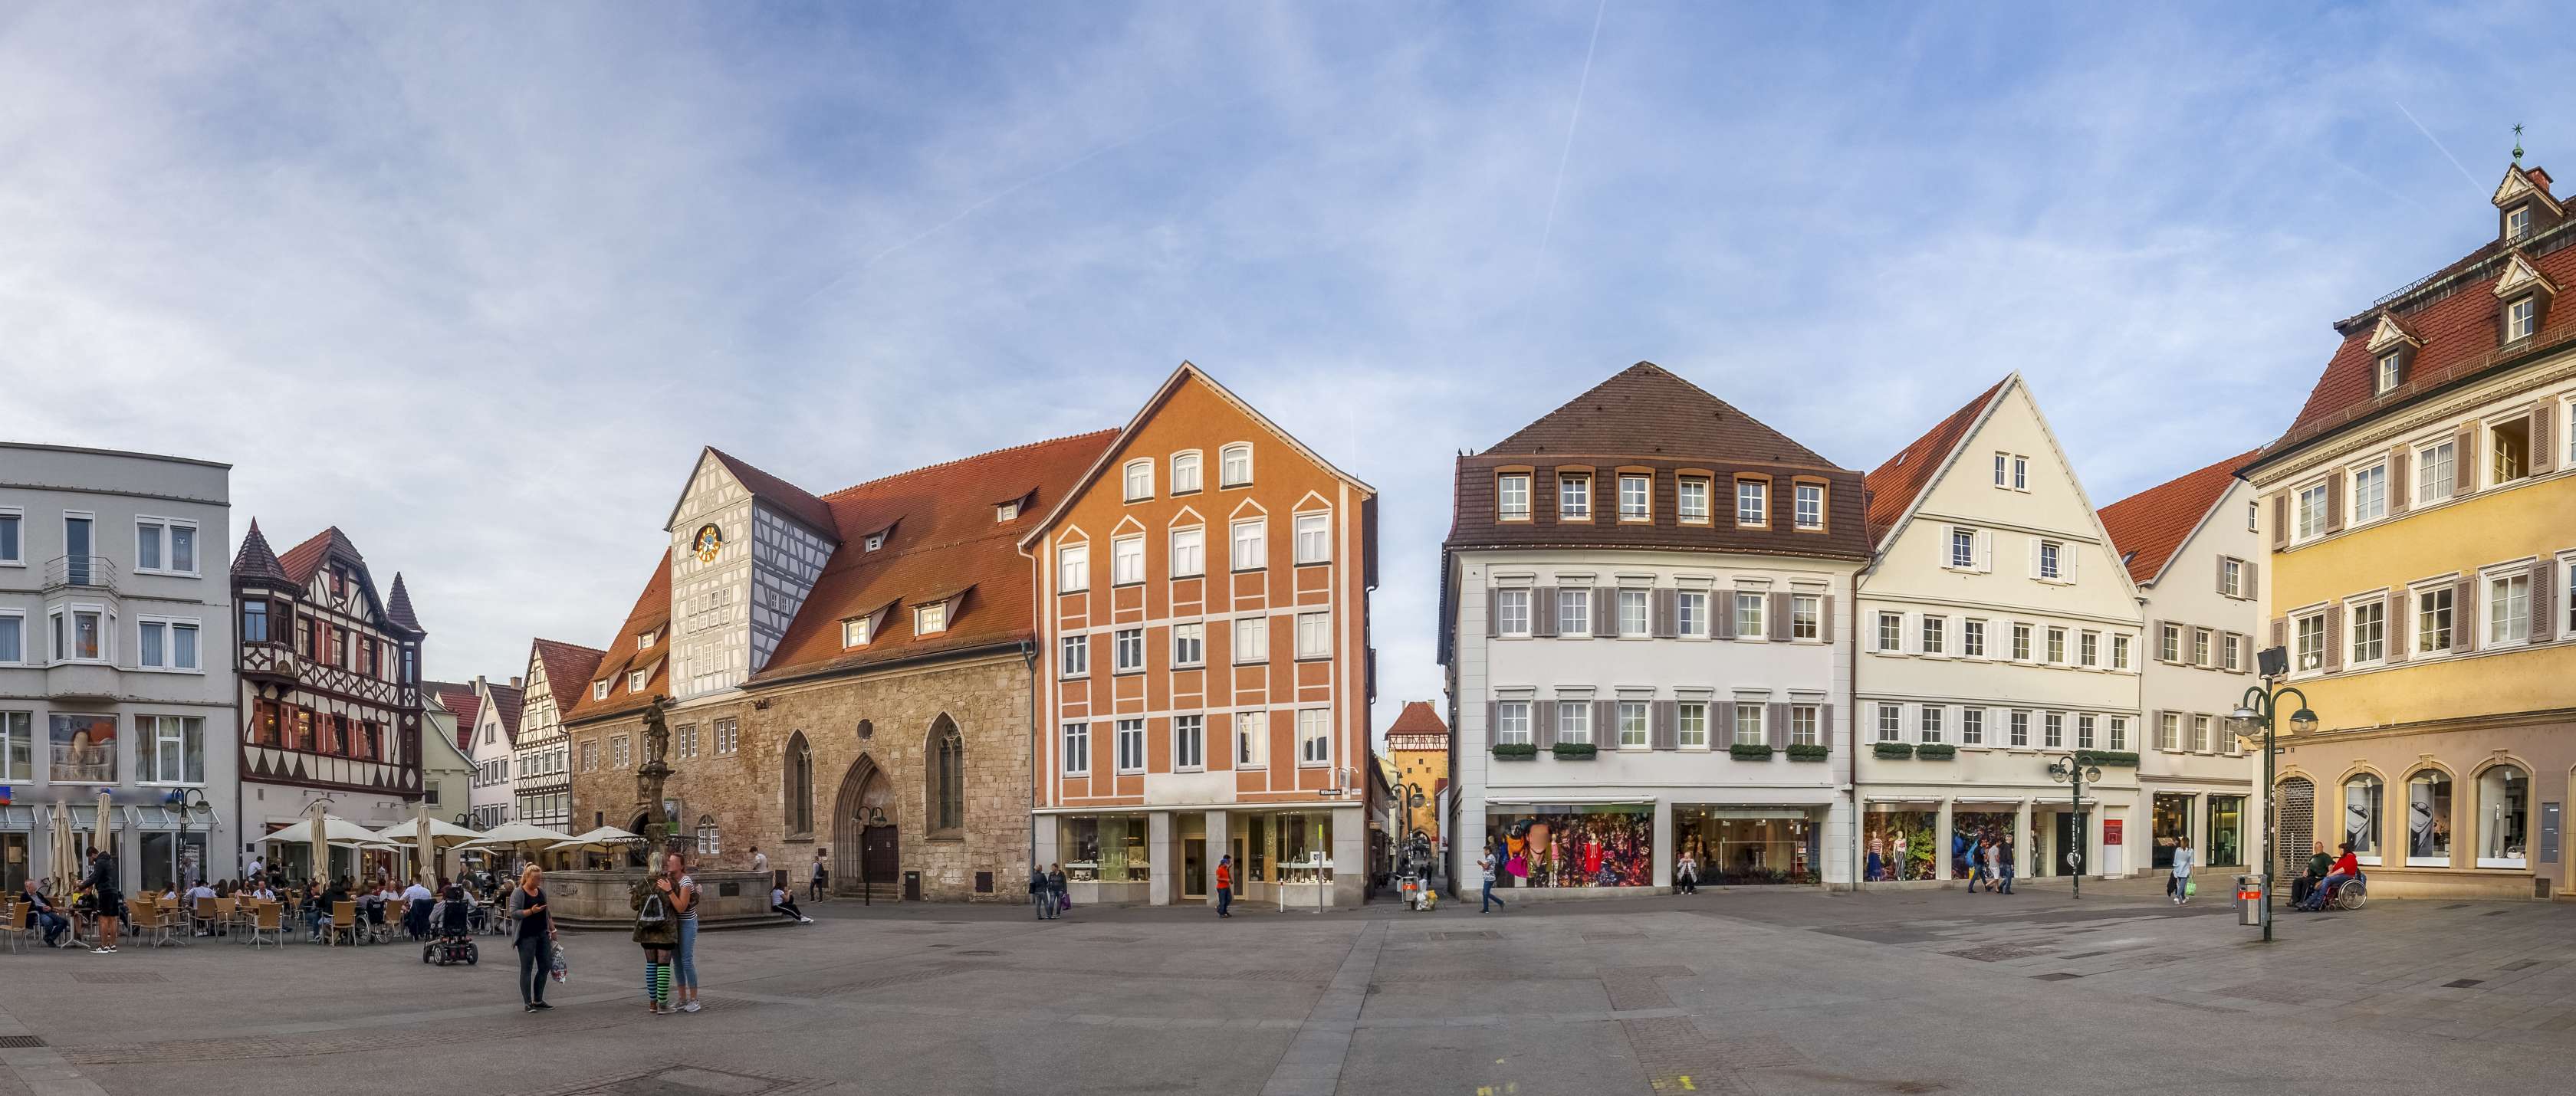 Marktplatz in Reutlingen mit Spitalhof und Maximilianbrunnen